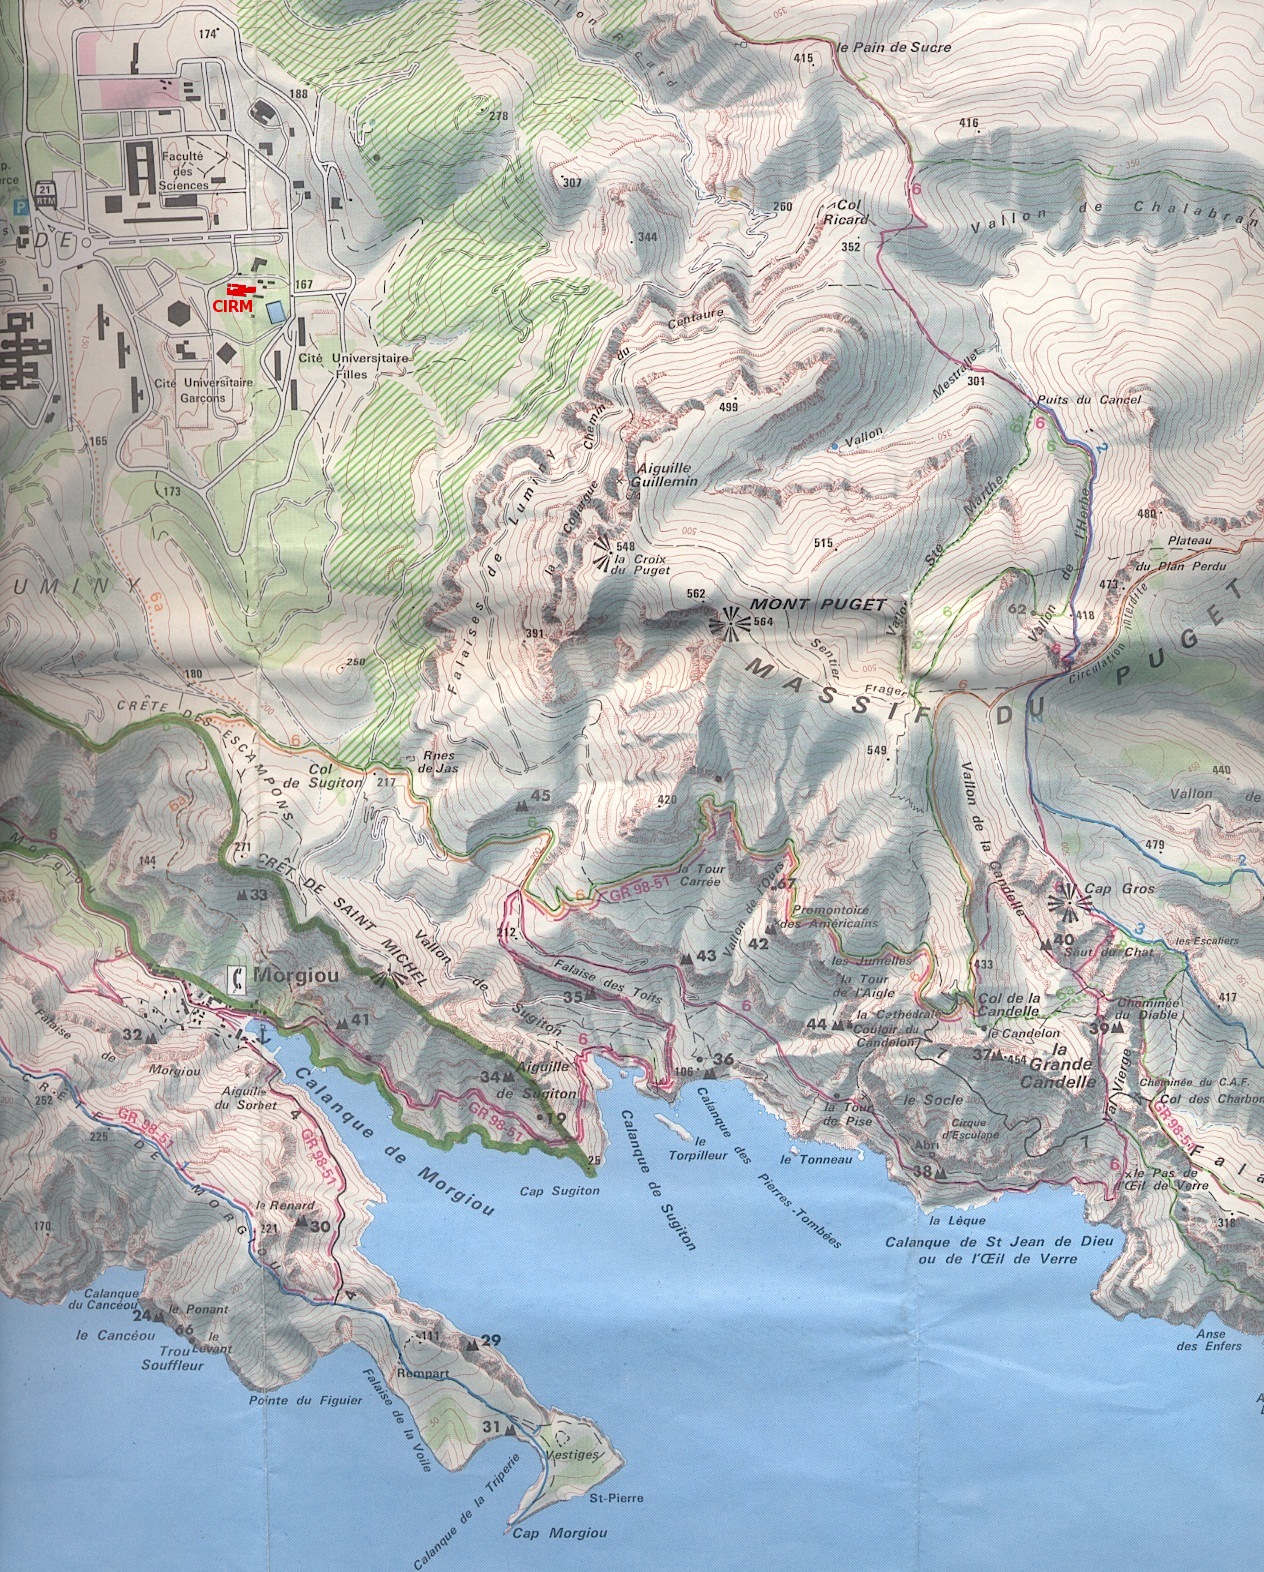 Calanques' map